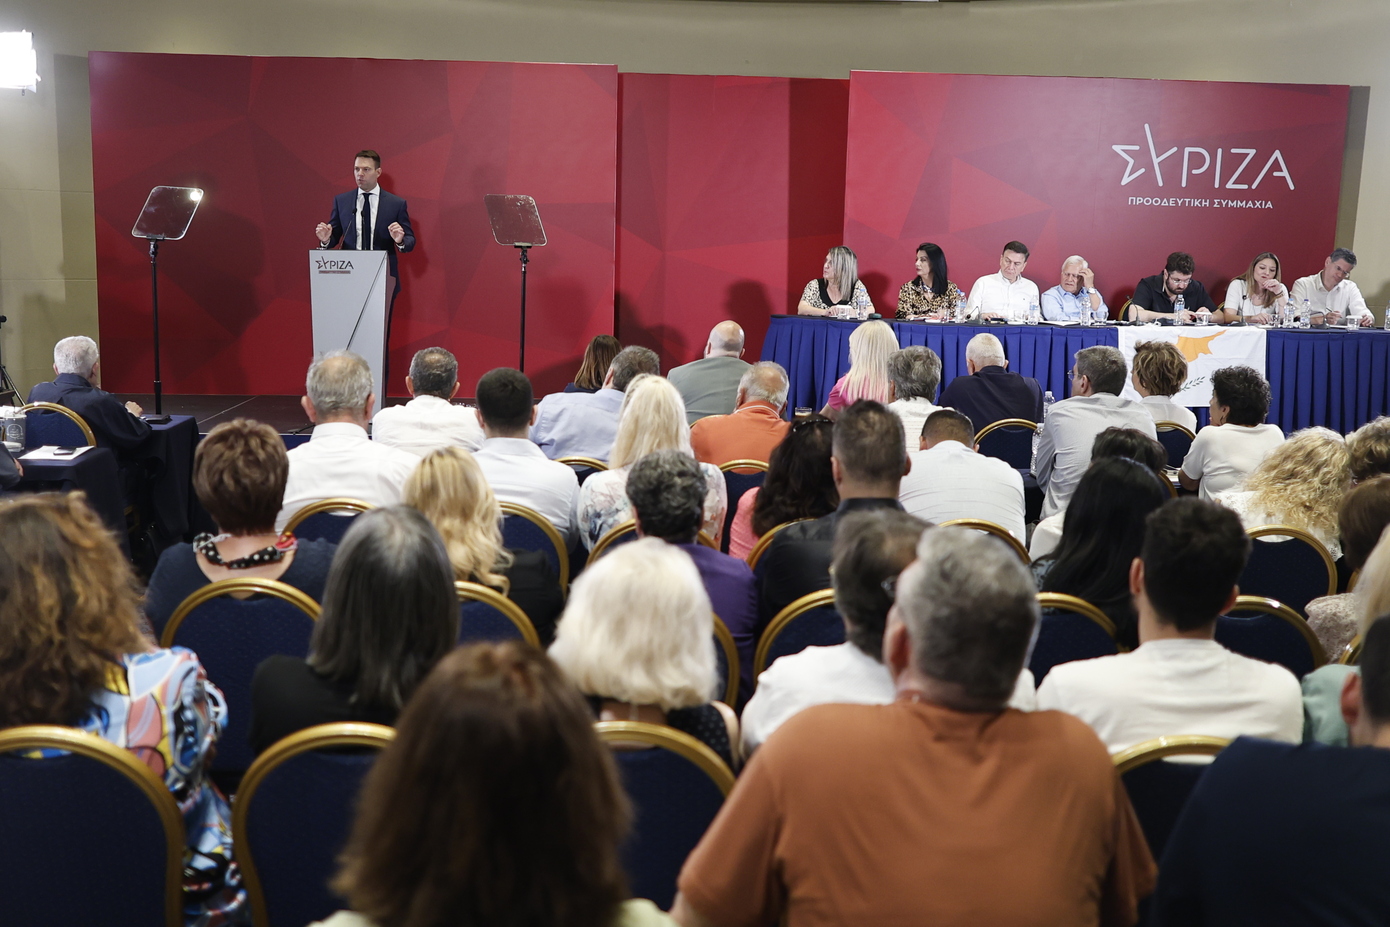 Σε εξέλιξη η Κεντρική Επιτροπή του ΣΥΡΙΖΑ &#8211; Το βλέμμα στραμμένο στη συνεργασία των προοδευτικών δυνάμεων